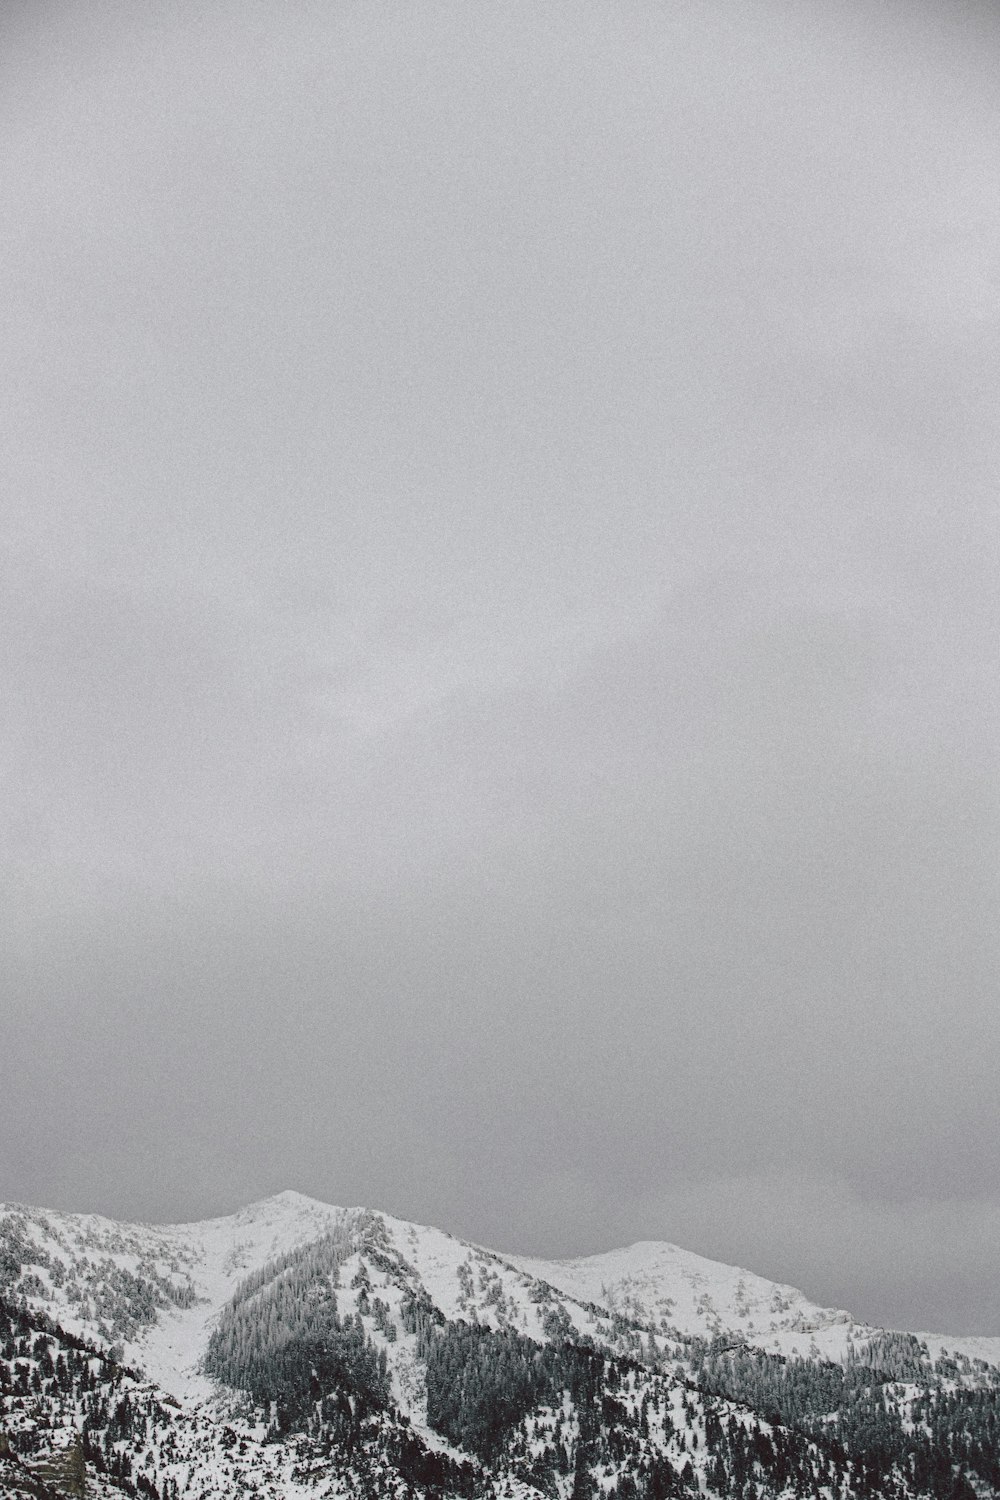 昼間の曇り空の下、雪に覆われた山